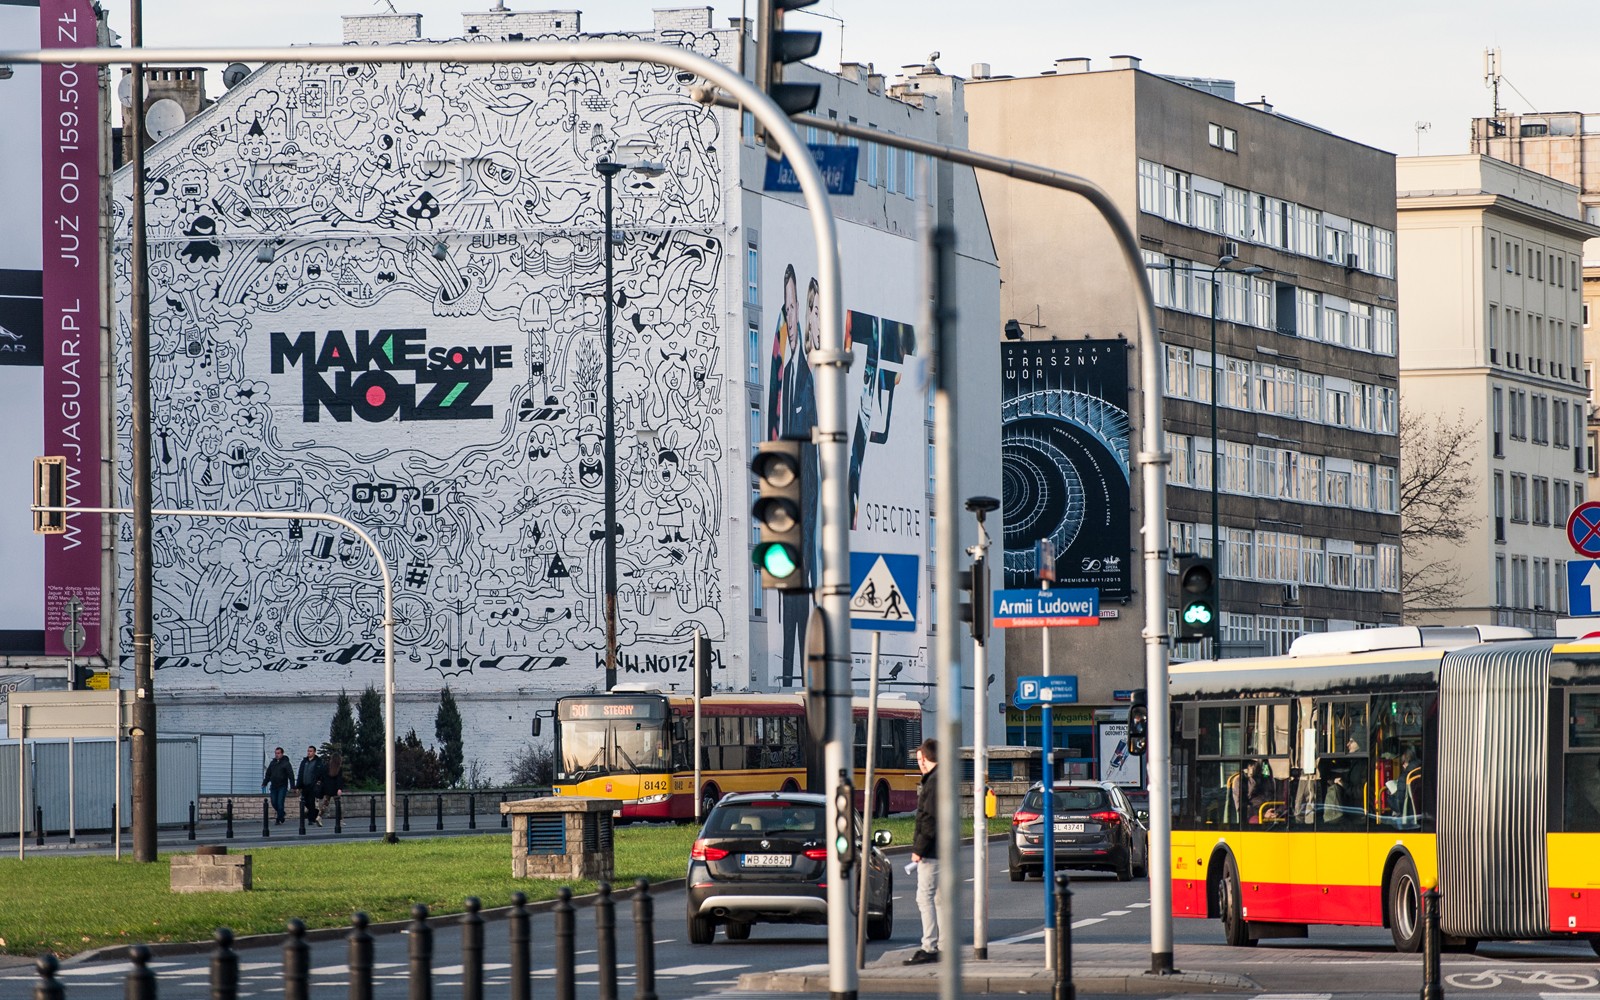 Ręcznie malowana reklama Make Some Noizz na ul. Polnej w Warszawie przy metro Politechnika | Make some Noizz malowane przez Good Looking Studio | Portfolio